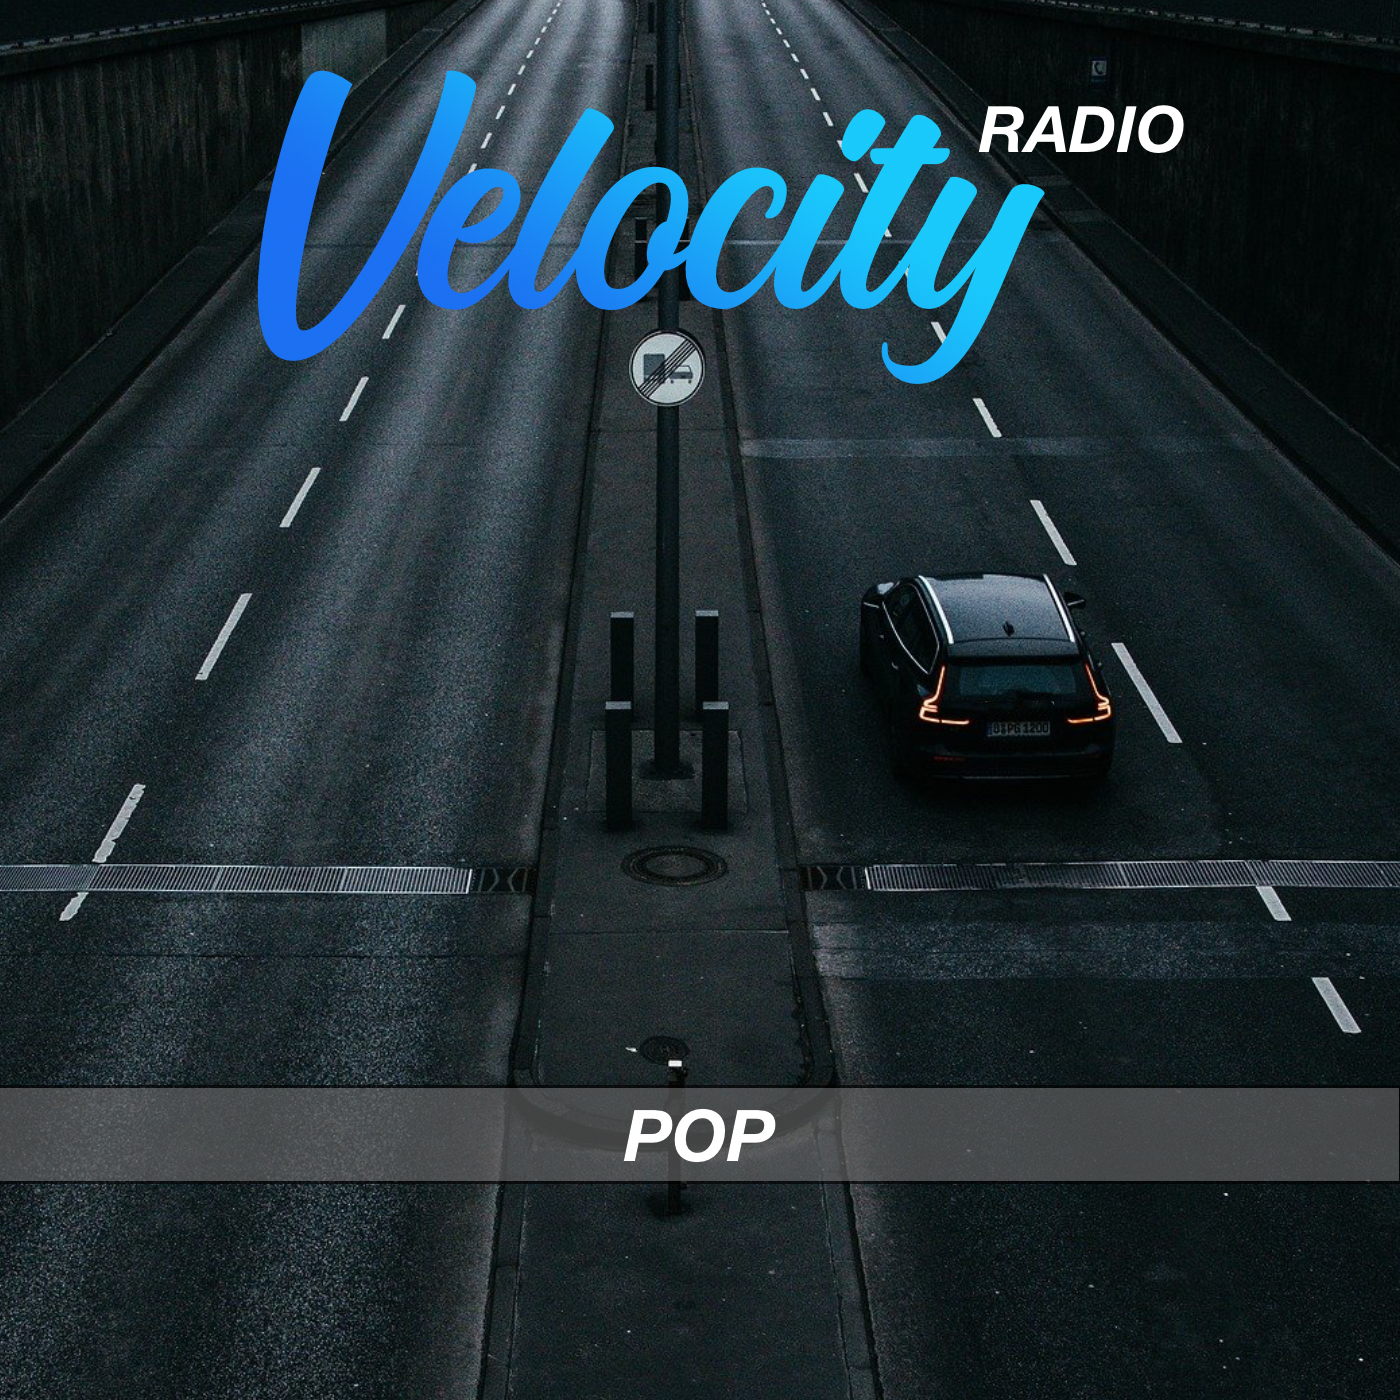 Velocity Radio - Pop